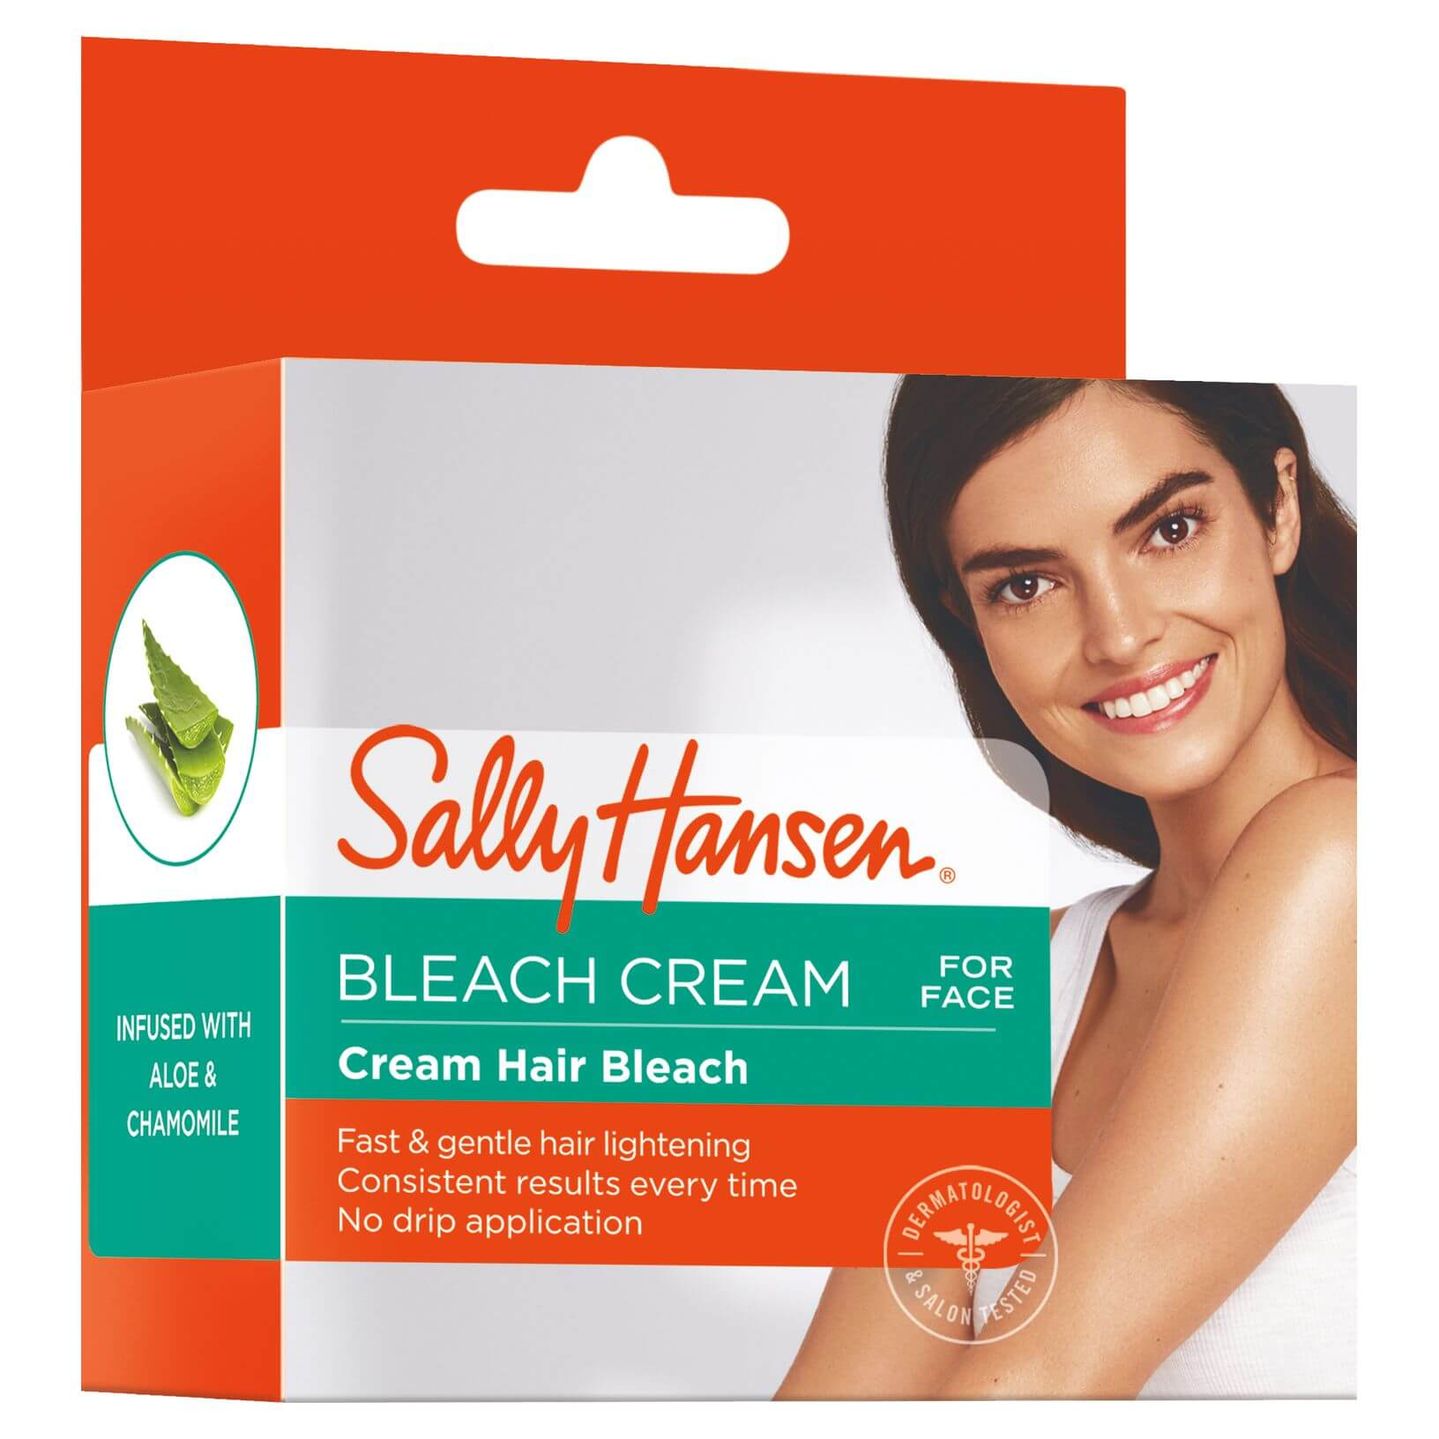 Crème Hair Bleach - for Face | Sally Hansen